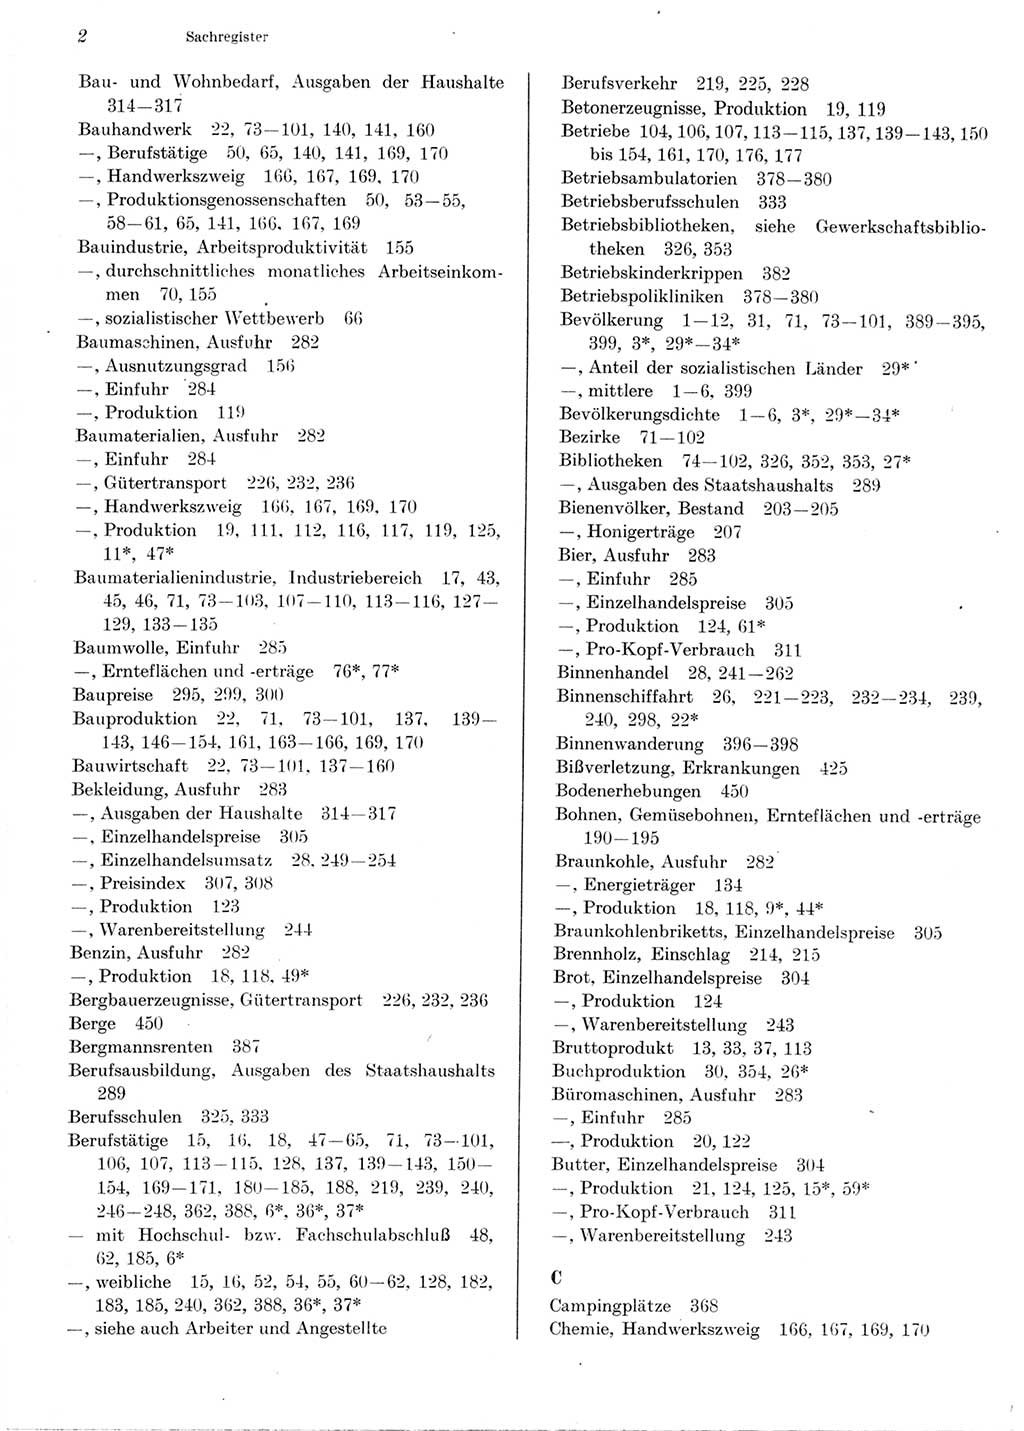 Statistisches Jahrbuch der Deutschen Demokratischen Republik (DDR) 1976, Seite 2 (Stat. Jb. DDR 1976, S. 2)